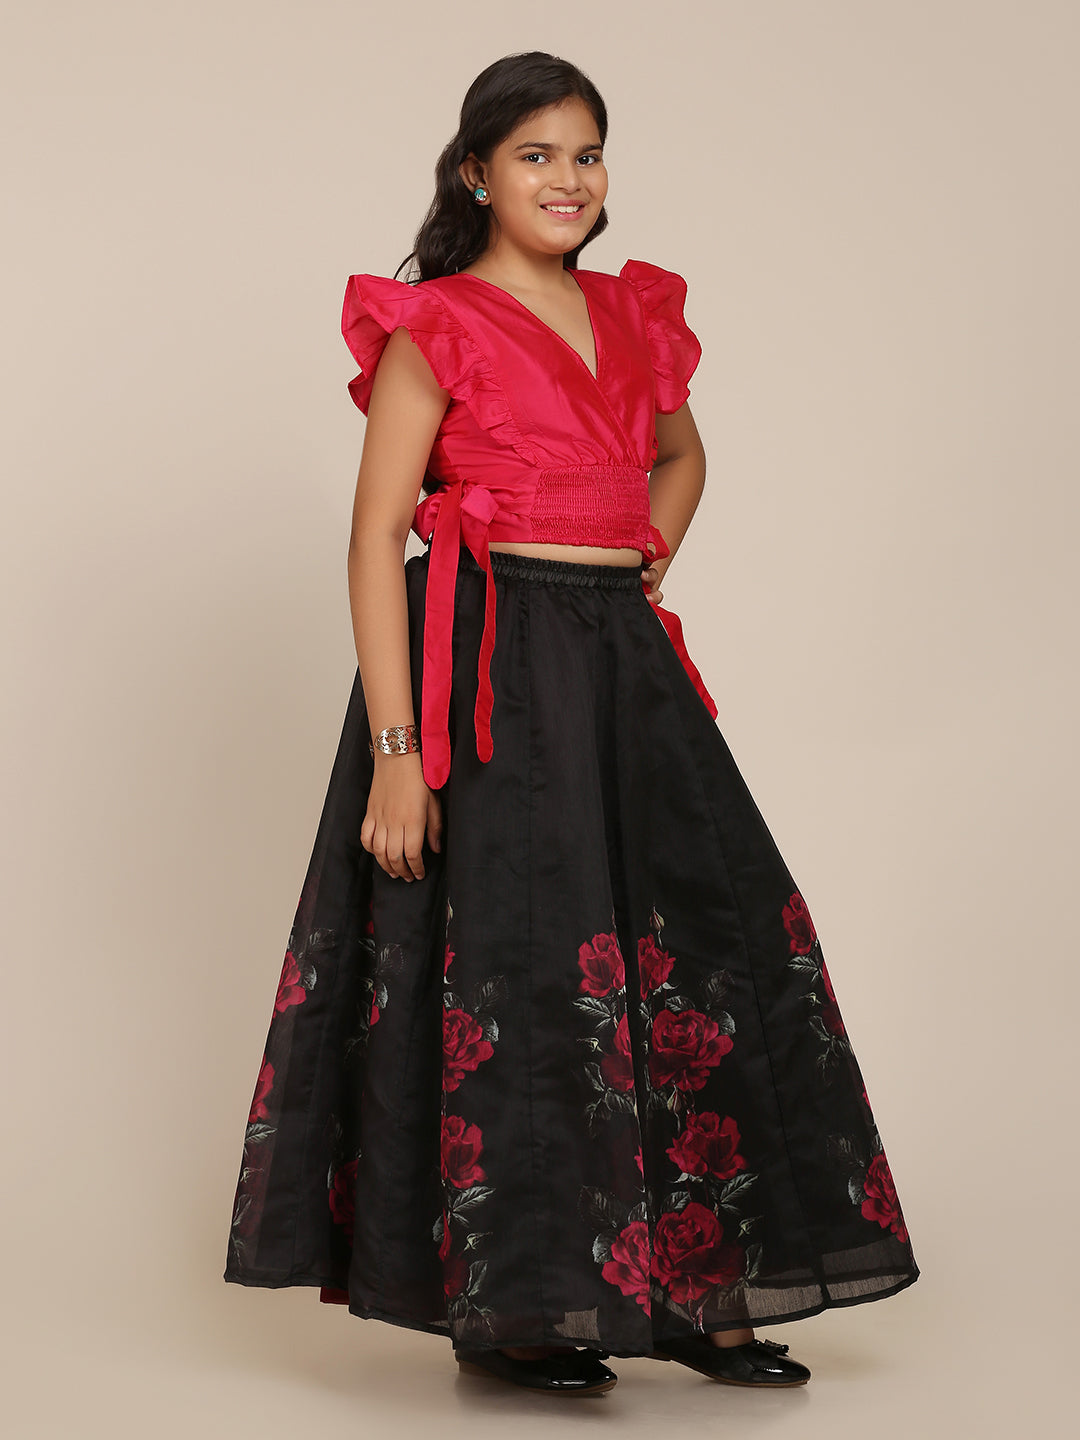 Buy Girls Tabby Silk Printed Readymade Lehenga Choli | Fashion Dream